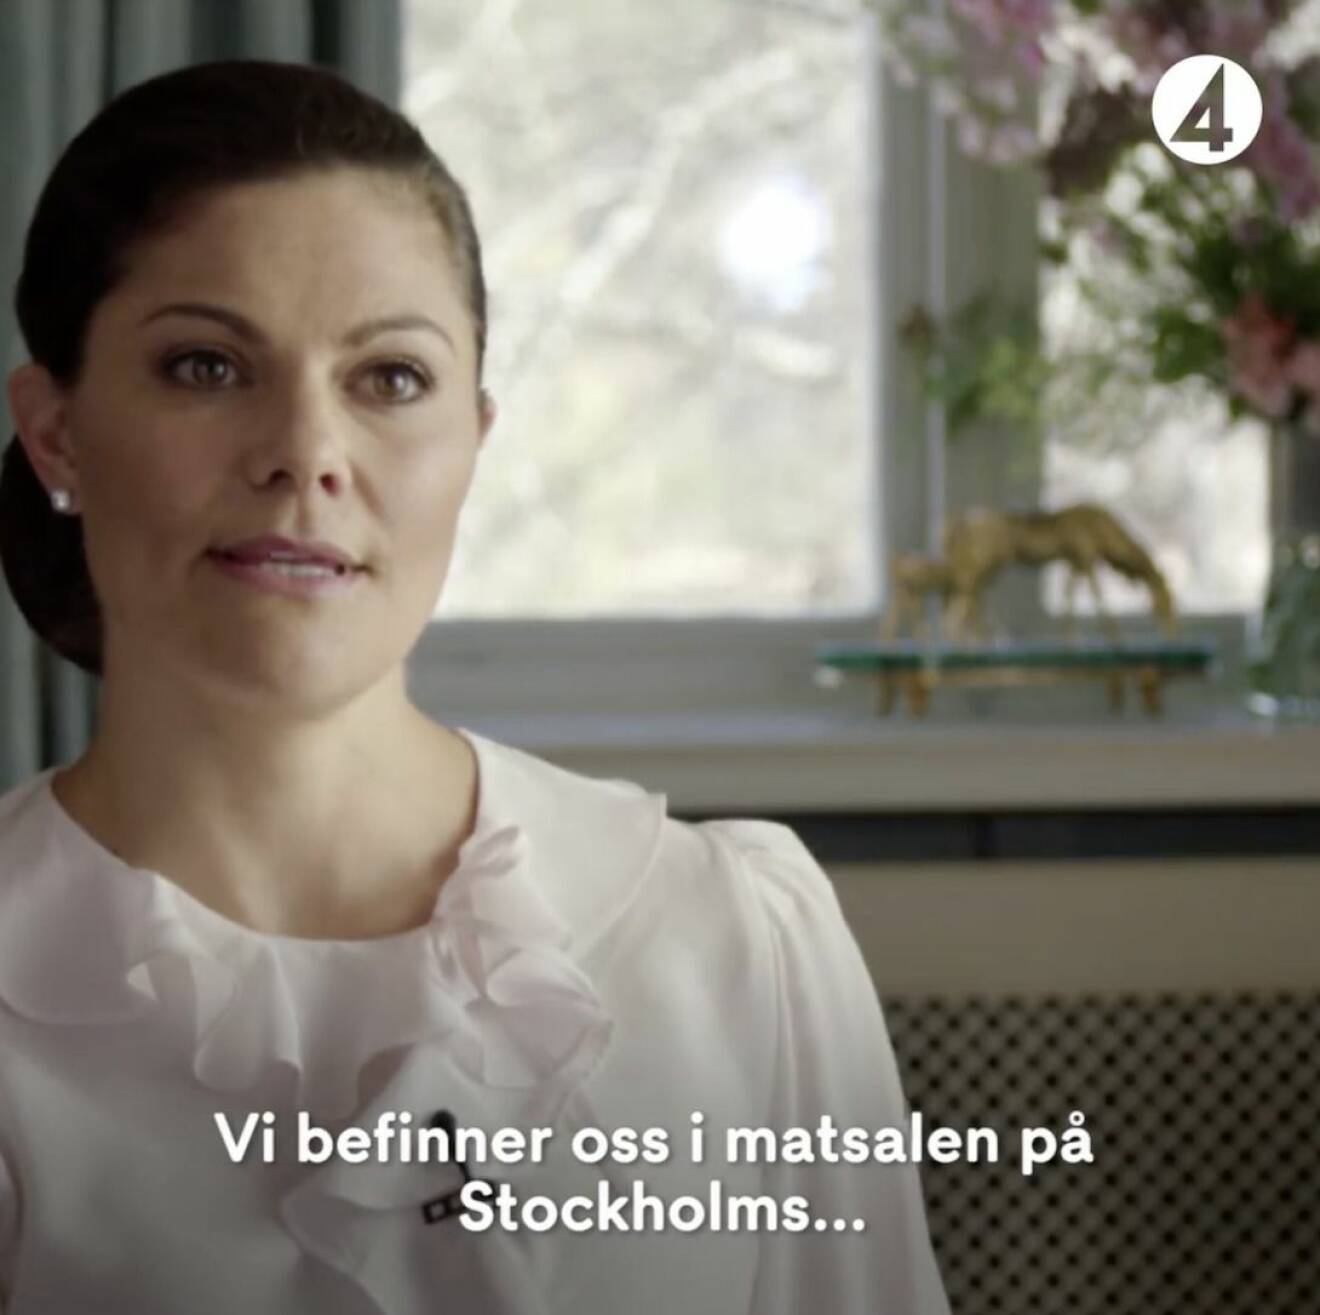 Kronprinsessan Victoria 40 år TV4 dokumentär Ebba Kleberg von Sydow Haga slott